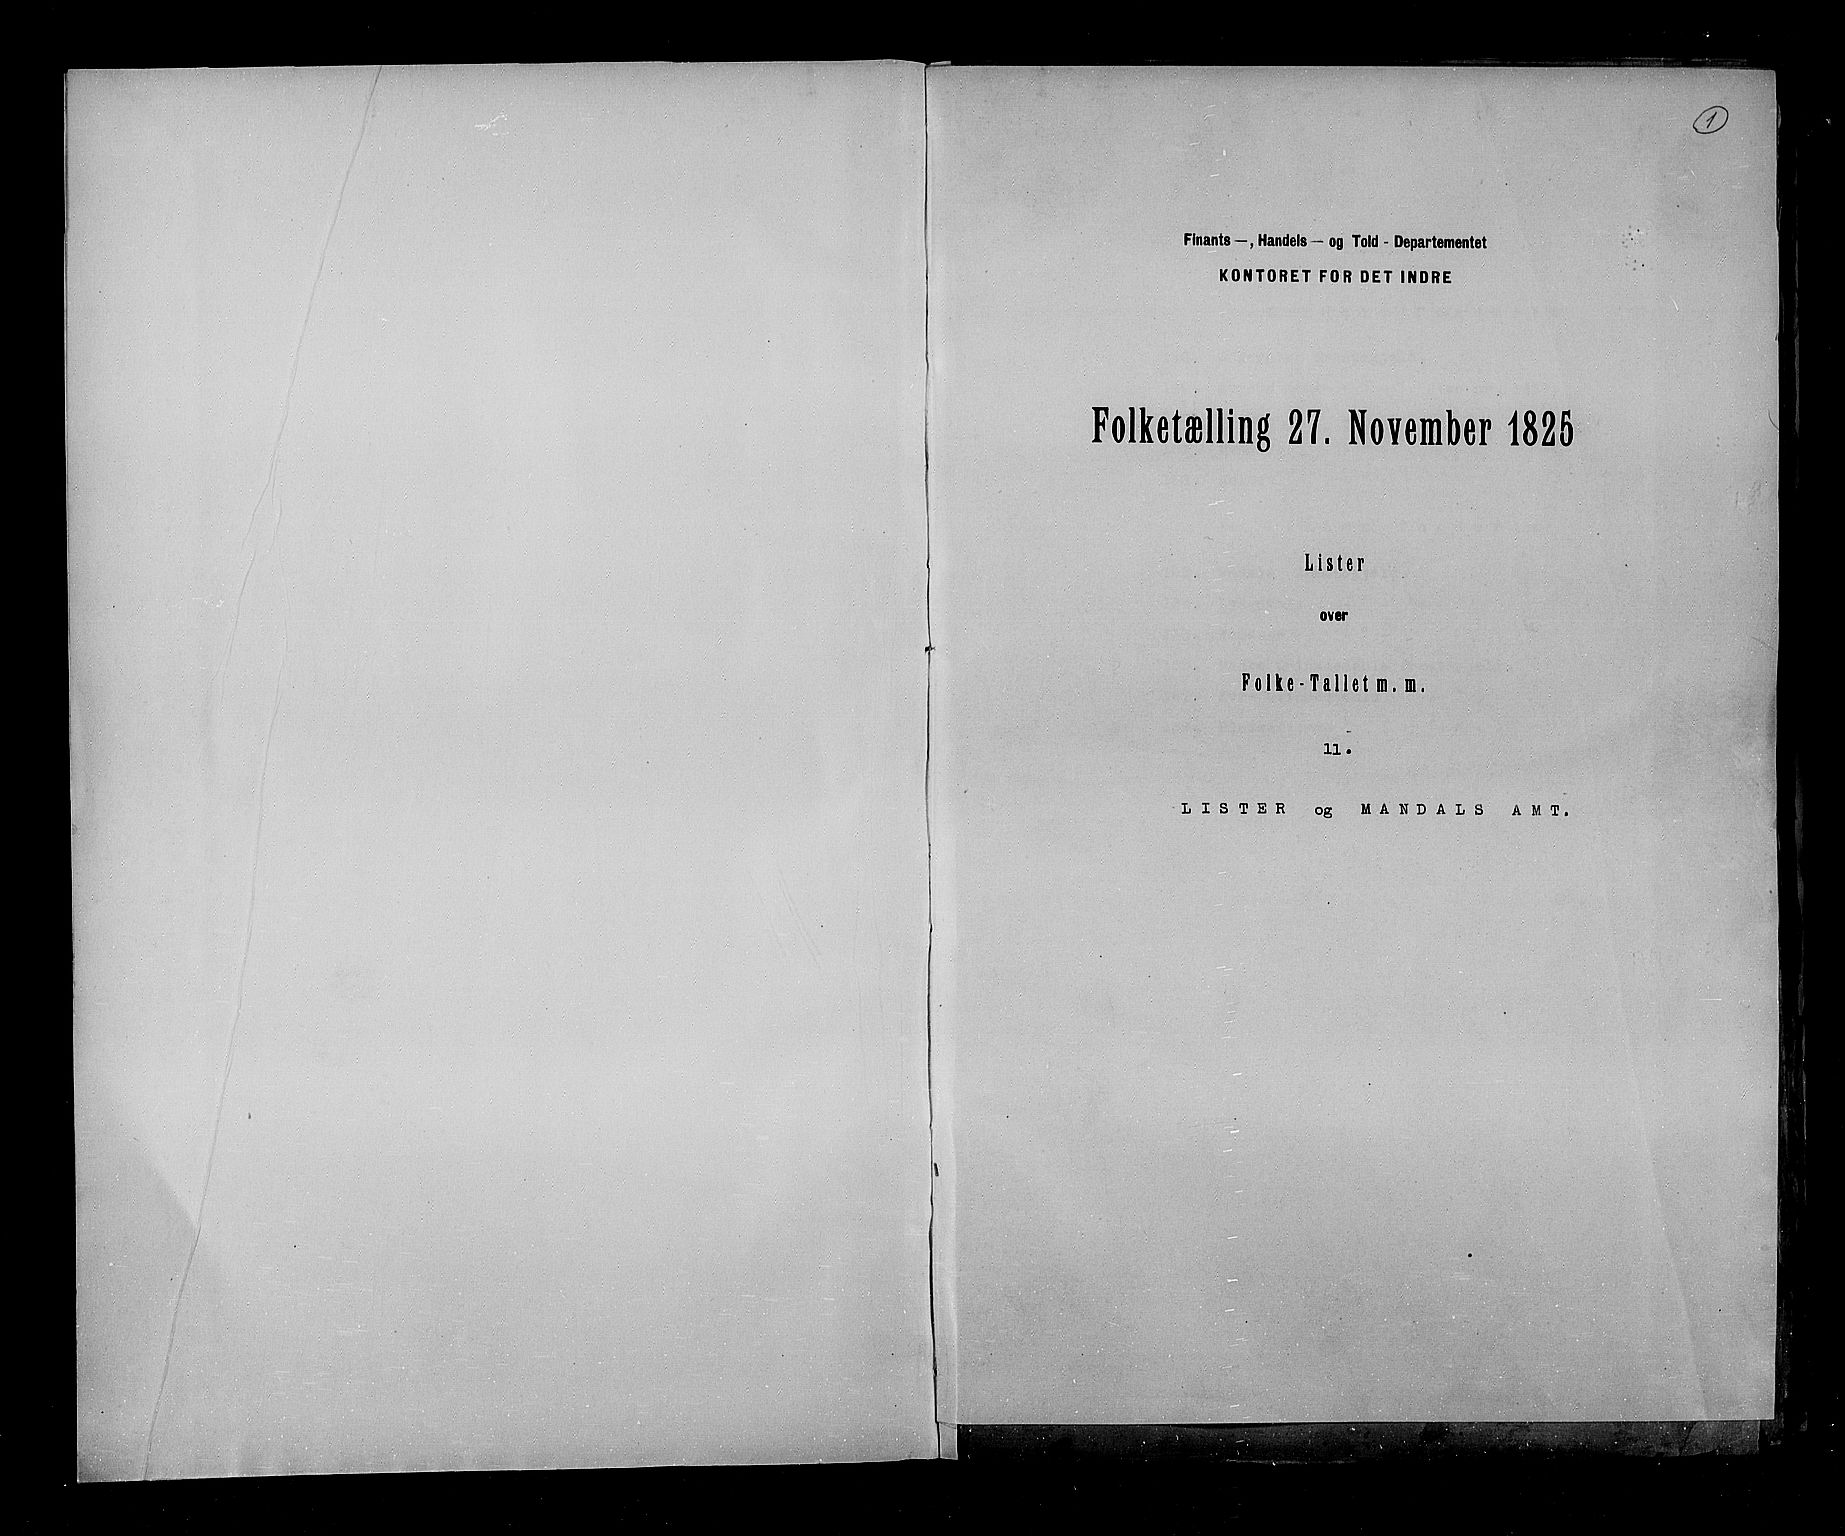 RA, Folketellingen 1825, bind 11: Lister og Mandal amt, 1825, s. 1